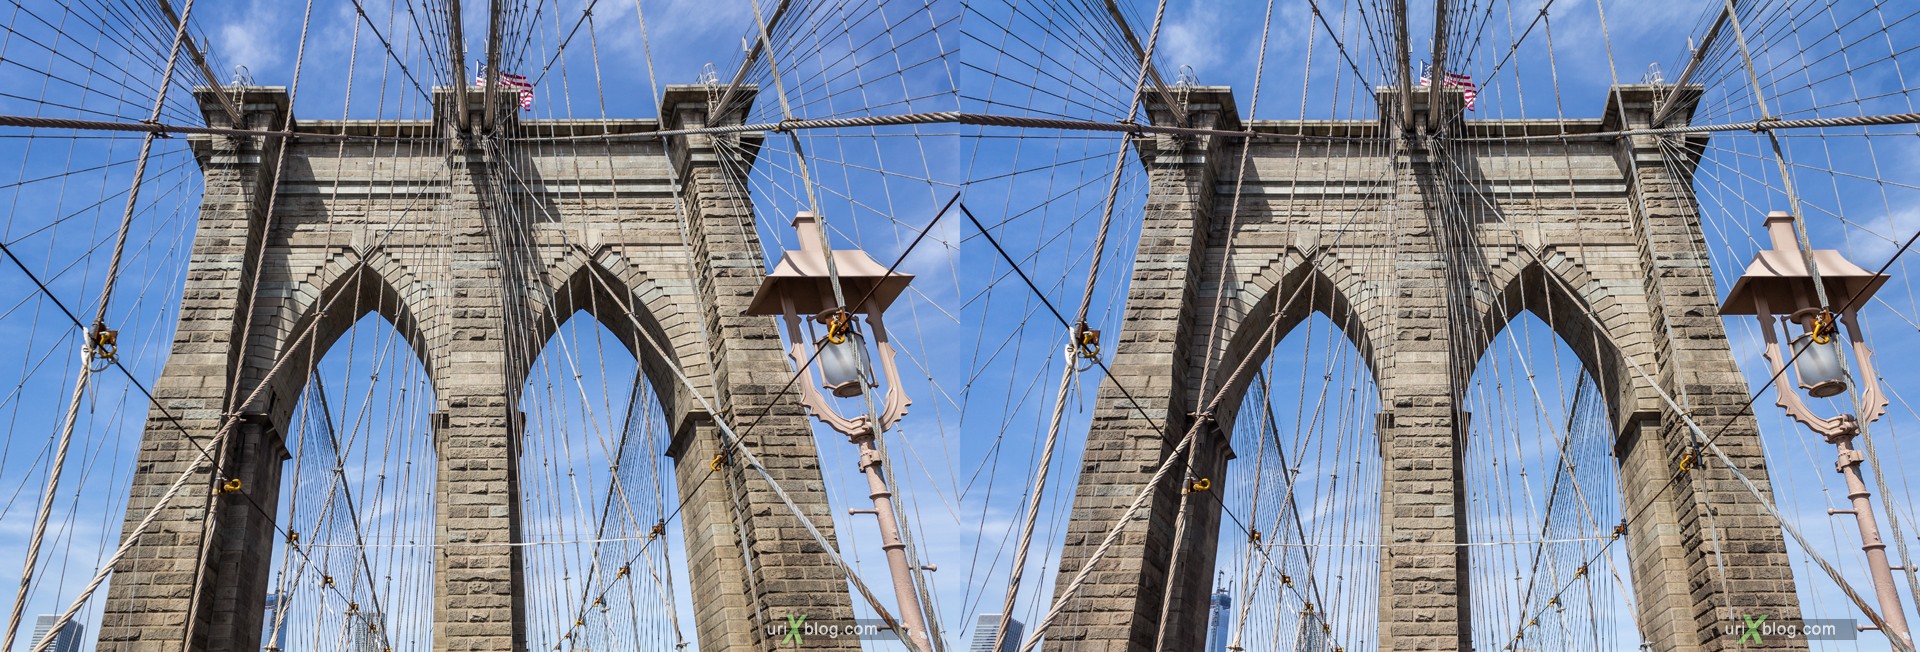 2013, Бруклинский мост, Нью-Йорк, США, 3D, перекрёстные стереопары, стерео, стереопара, стереопары